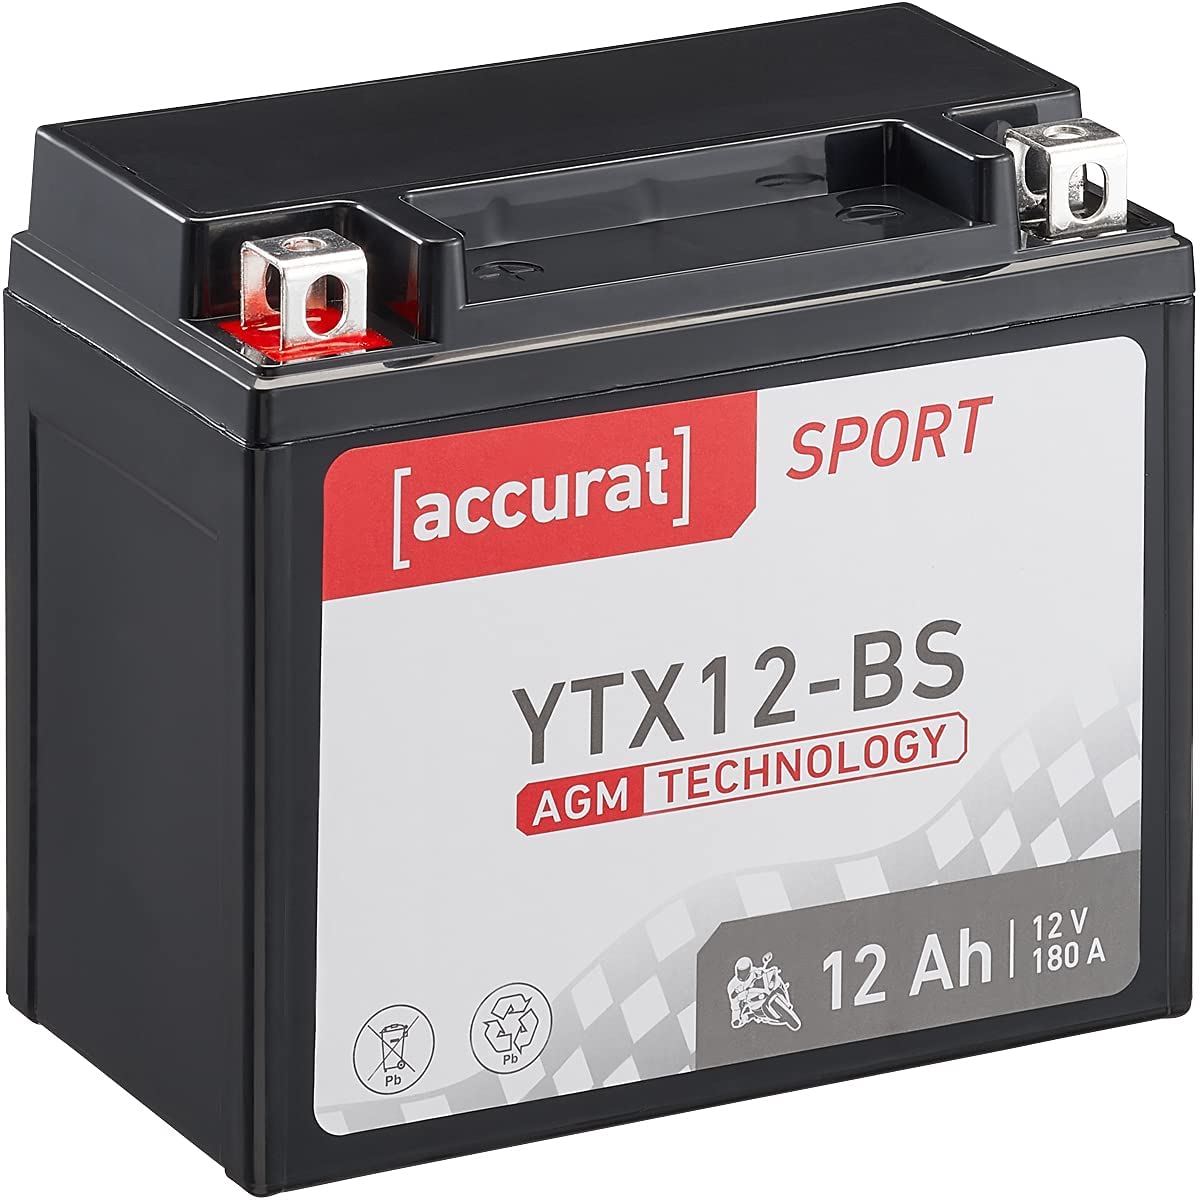 Accurat Motorradbatterie YTX12-BS - 12V, 12Ah, 180A, rüttelfest, wartungsfrei - Starterbatterie, AGM Batterie in Erstausrüsterqualität für Rasentraktor, Roller, Motorrad, Quad von Accurat